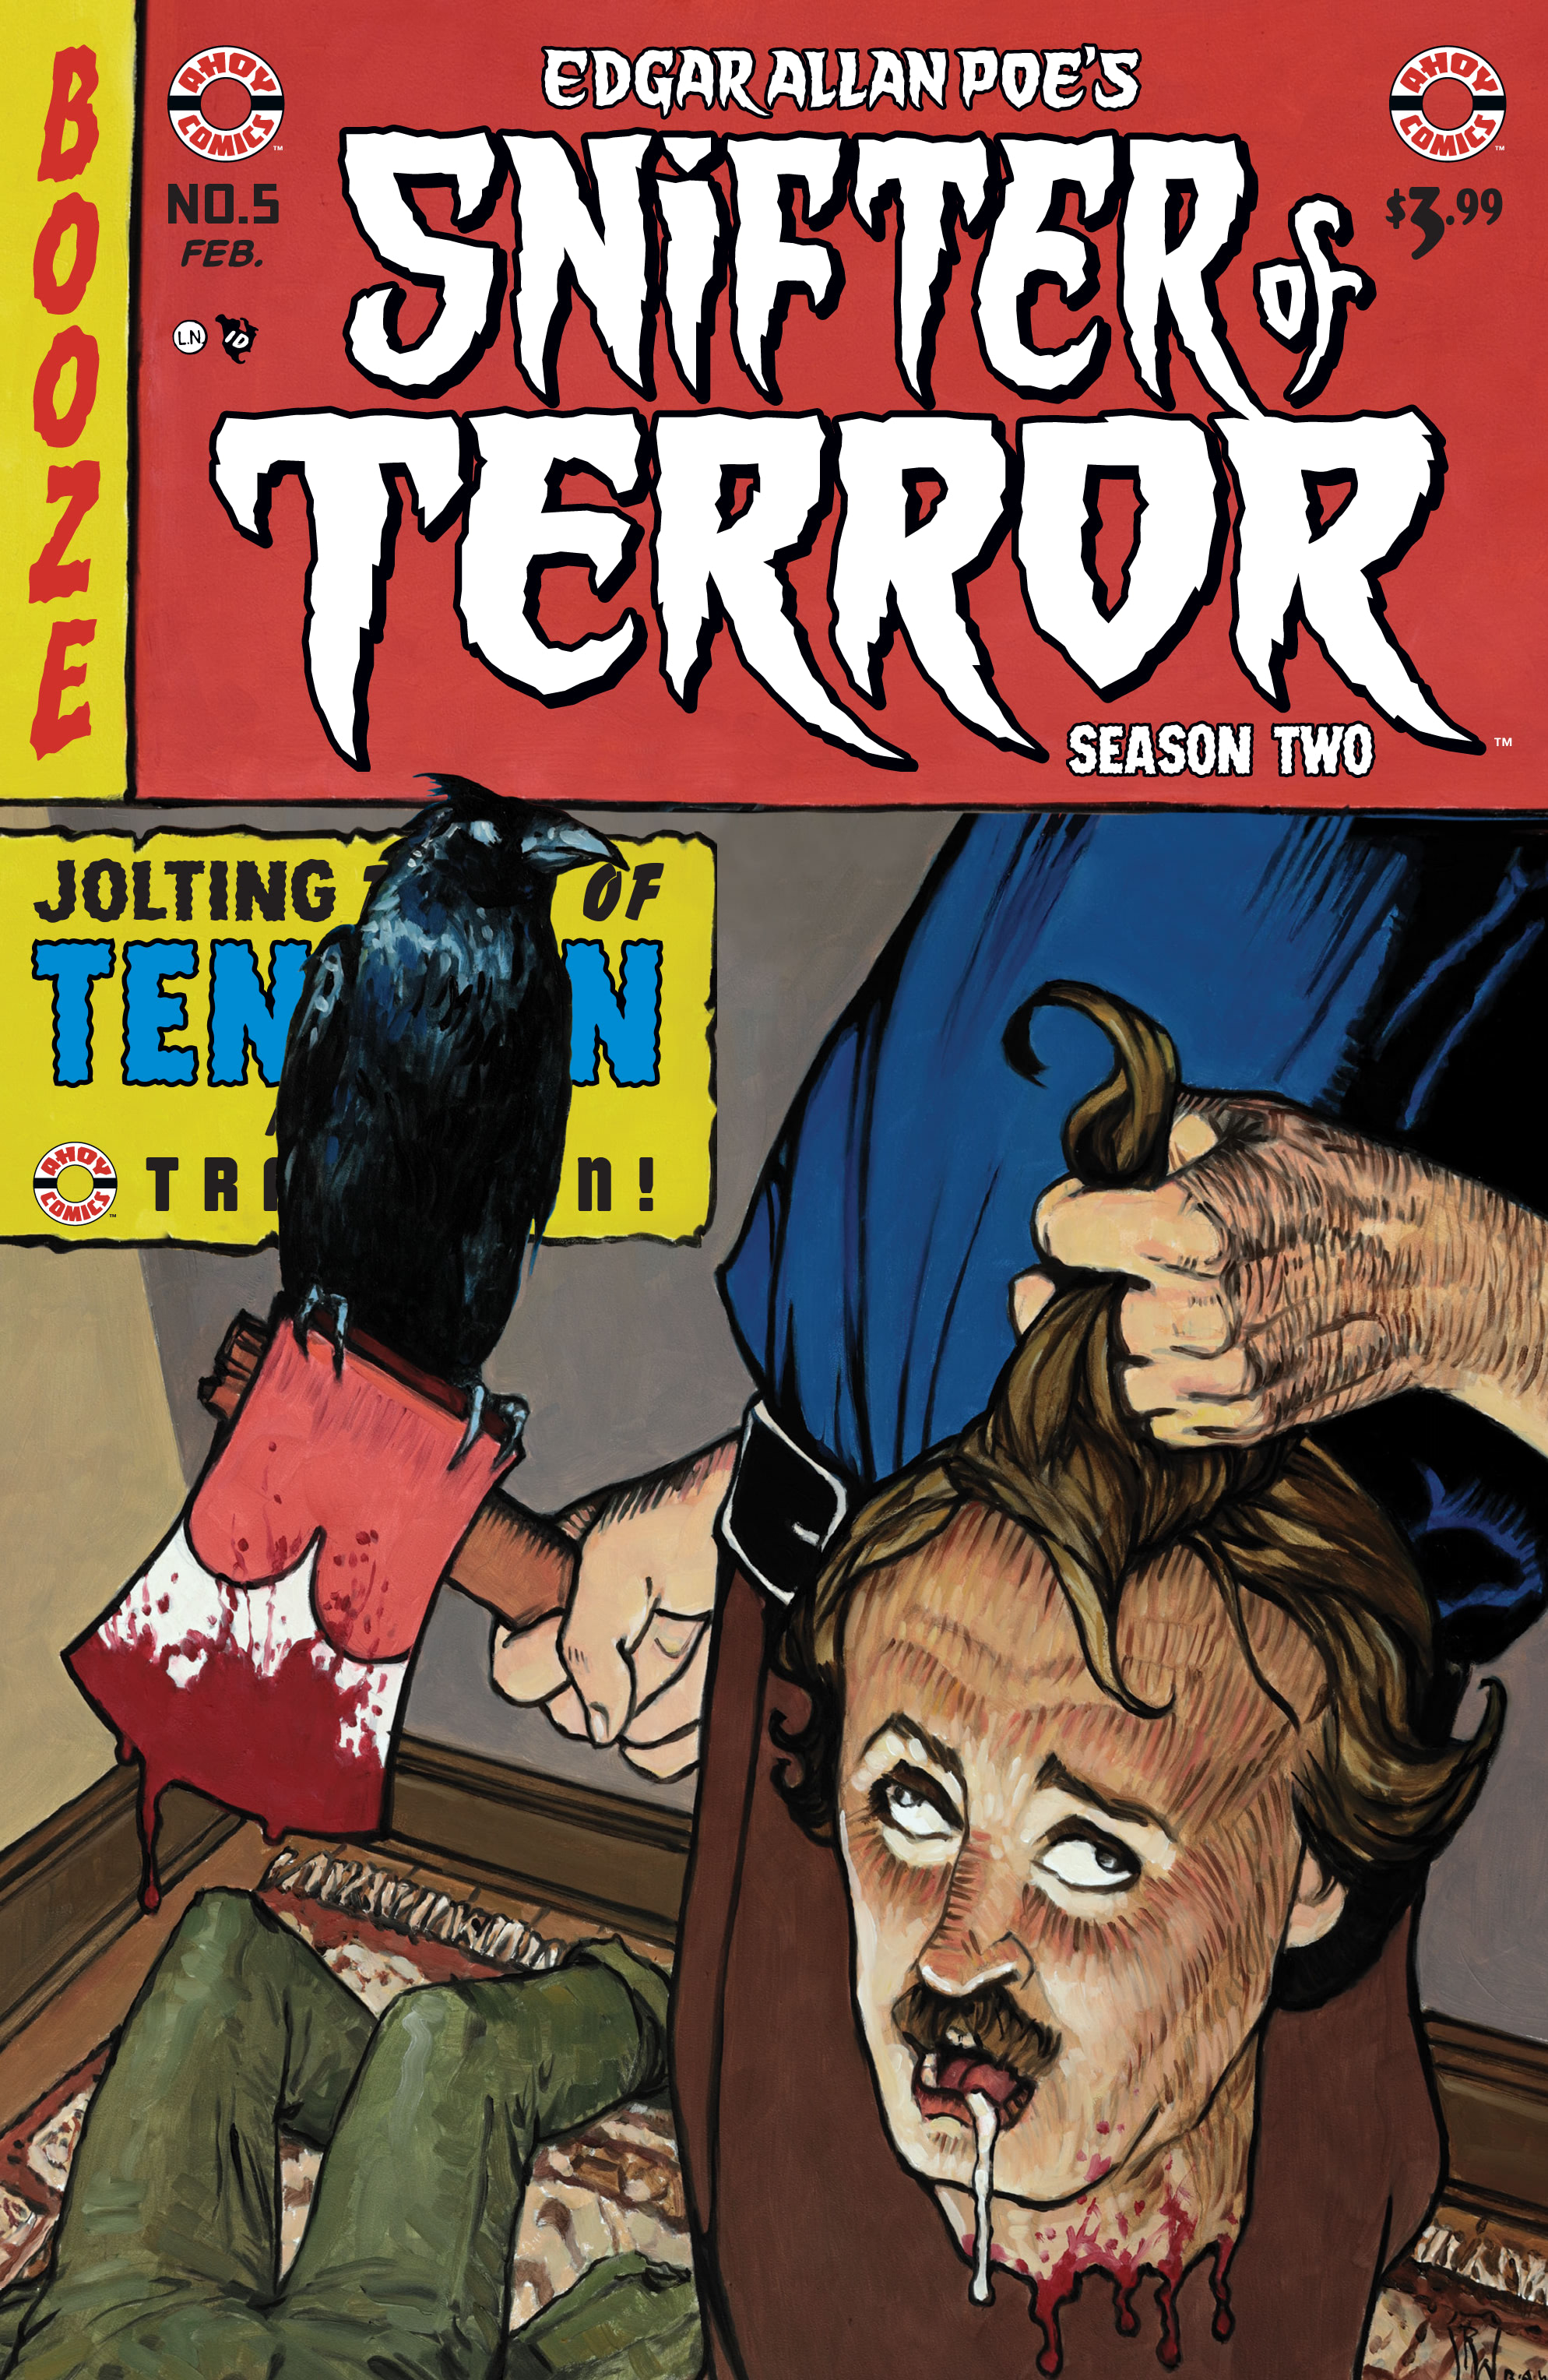 Read online Edgar Allan Poe's Snifter of Terror Season Two comic -  Issue #5 - 1